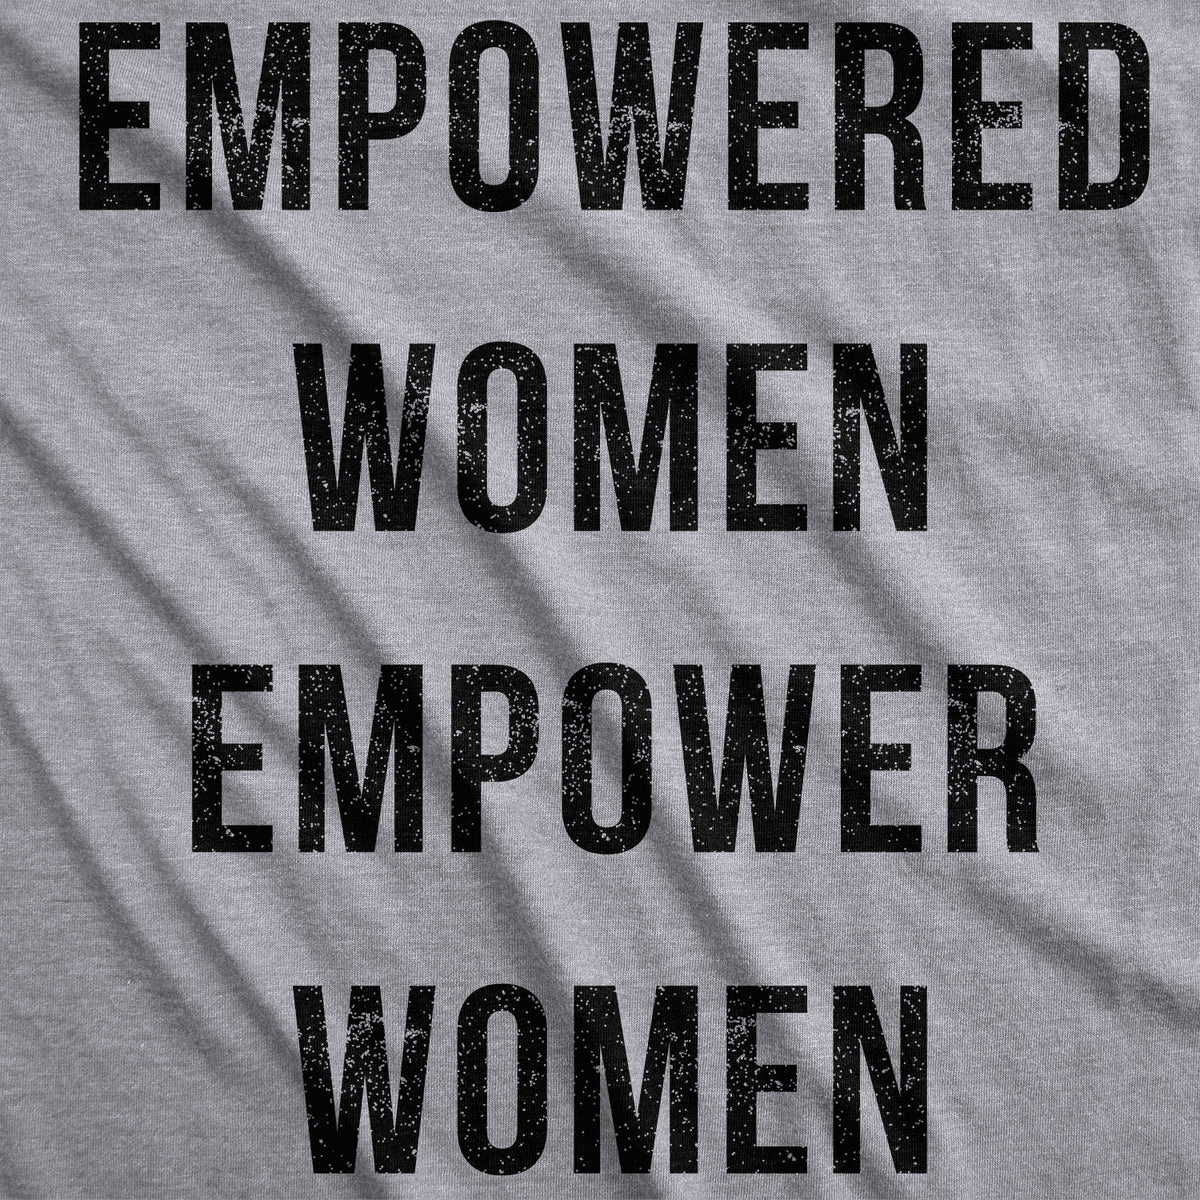 Empowered Women Empower Women Women&#39;s T Shirt